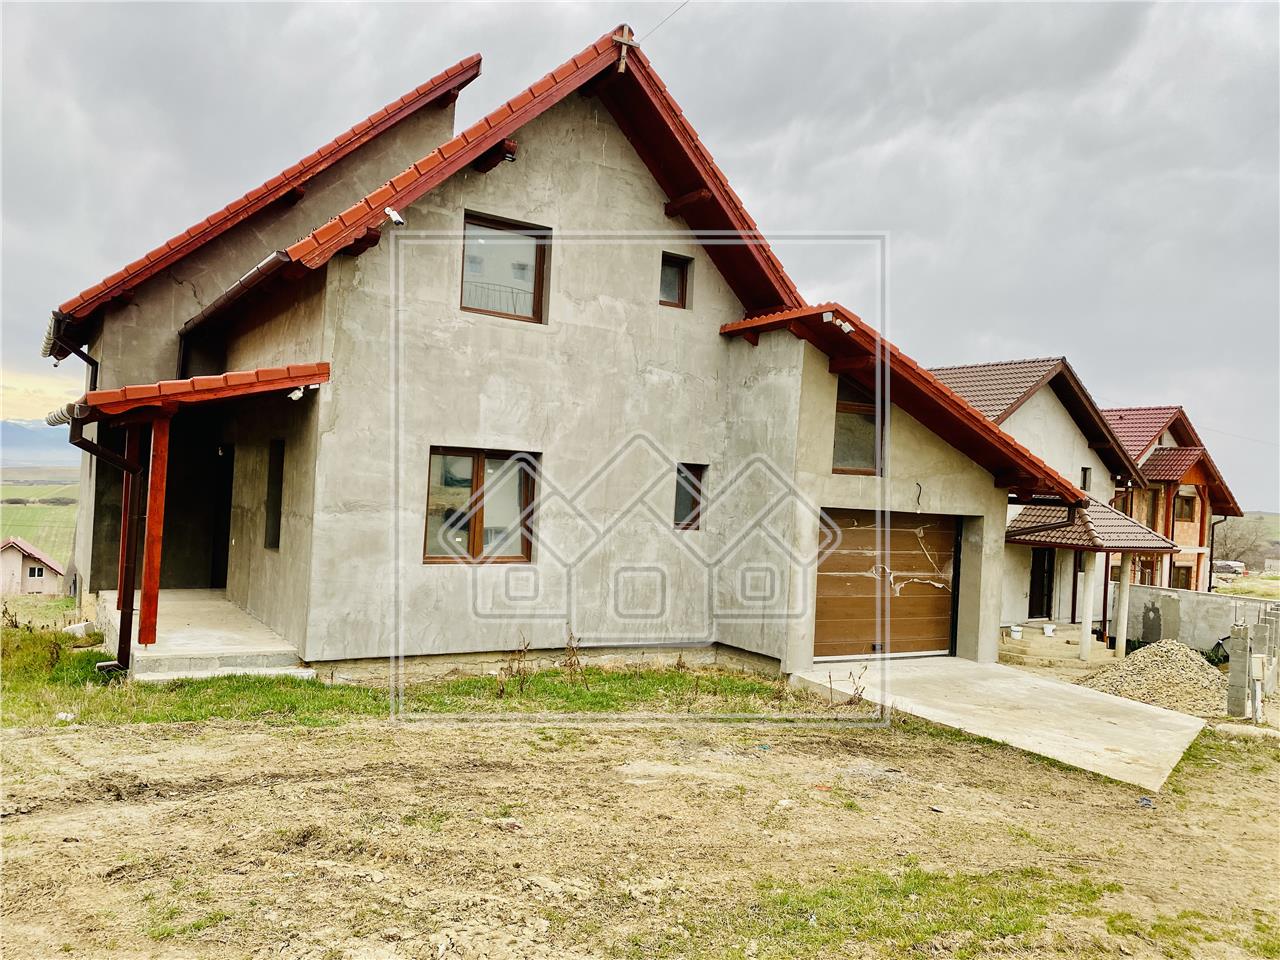 House for sale in Sura Mare - individual - 185 sqm usable - white deli